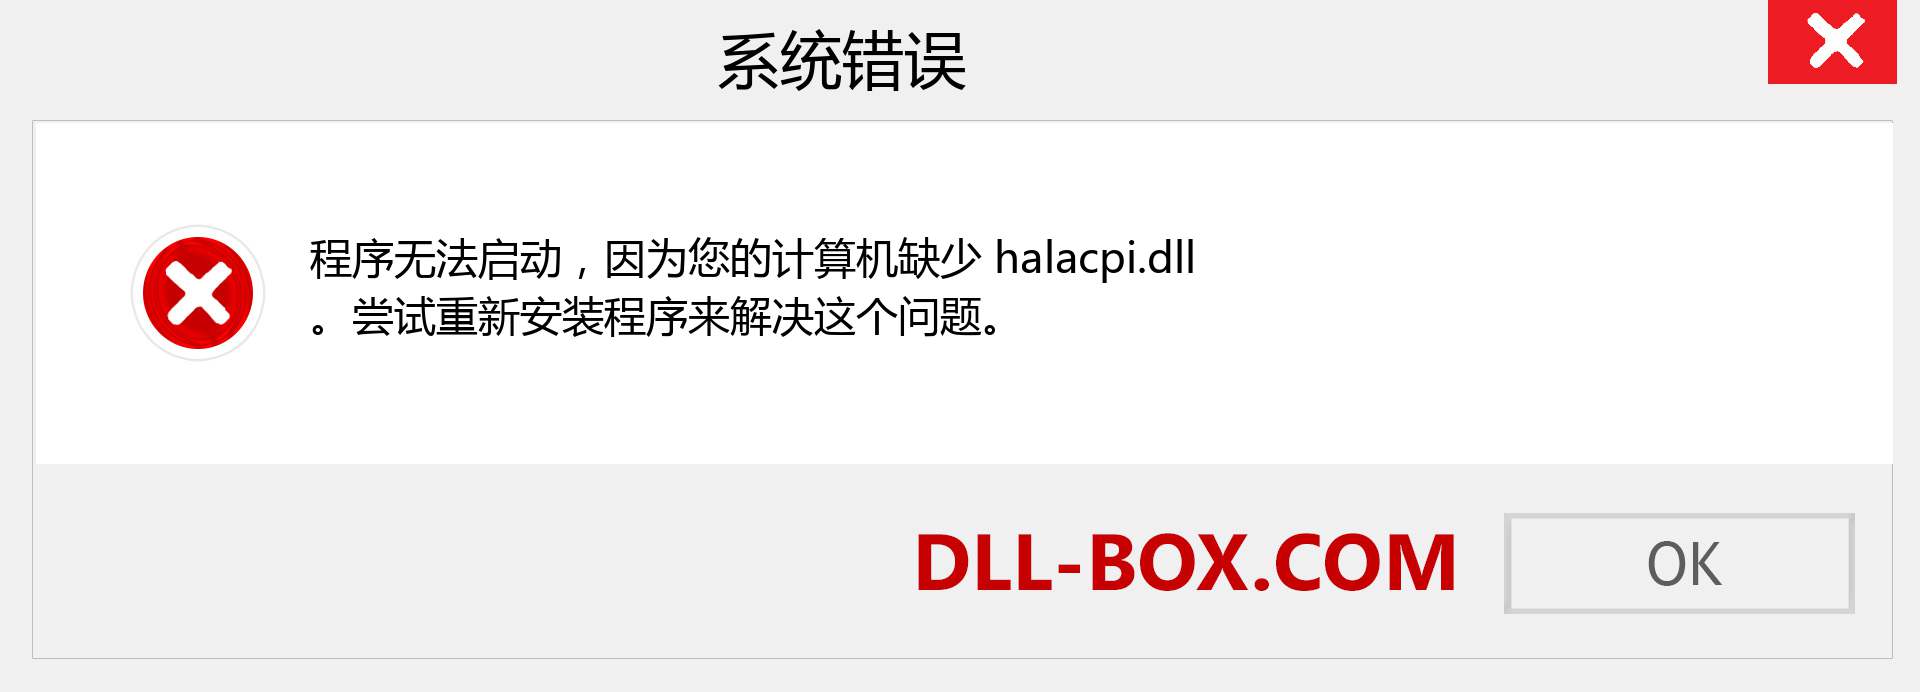 halacpi.dll 文件丢失？。 适用于 Windows 7、8、10 的下载 - 修复 Windows、照片、图像上的 halacpi dll 丢失错误